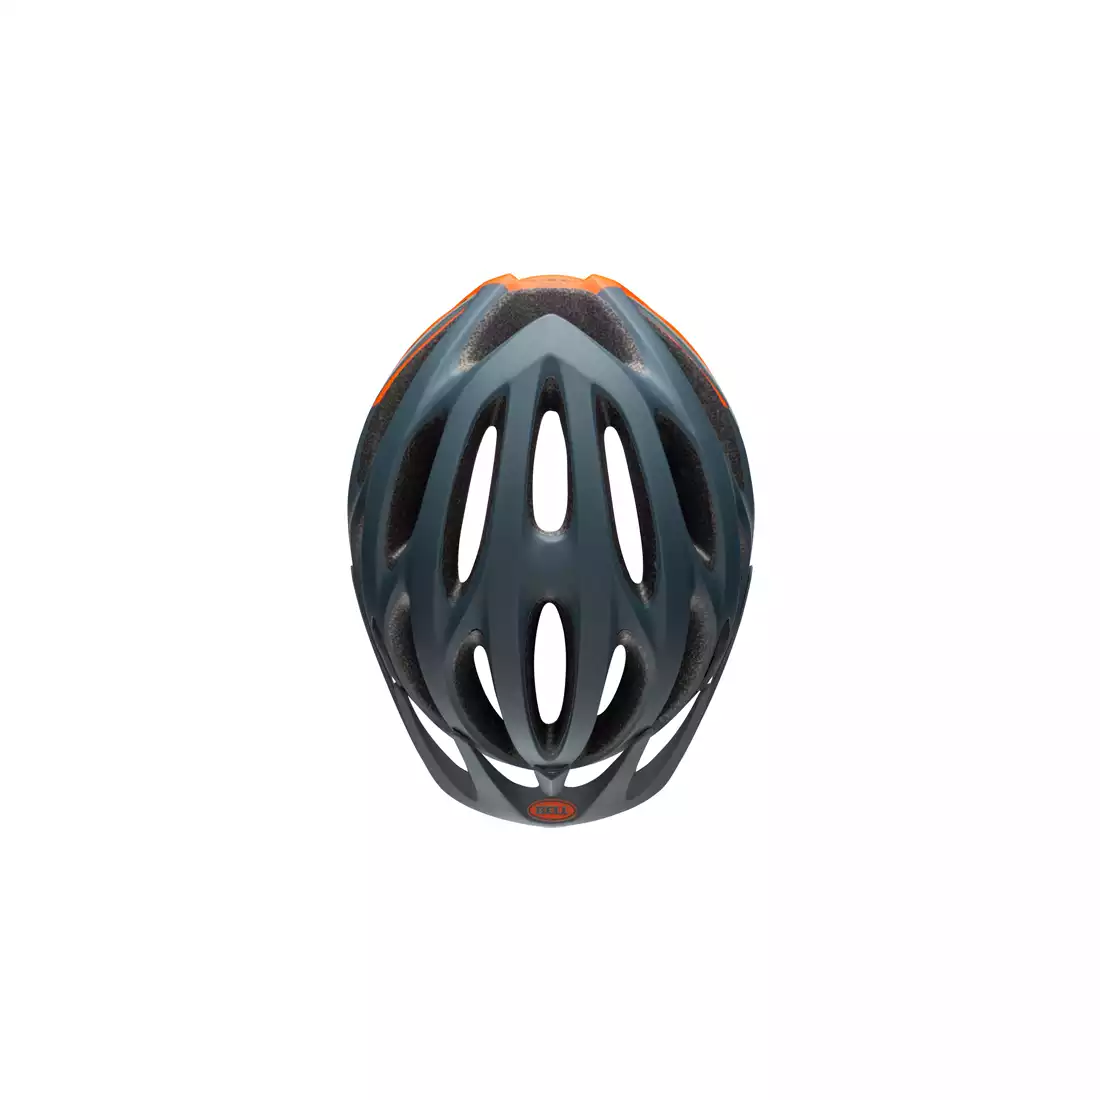 Kask rowerowy mtb BELL TRAVERSE speed matte slate gray orange 